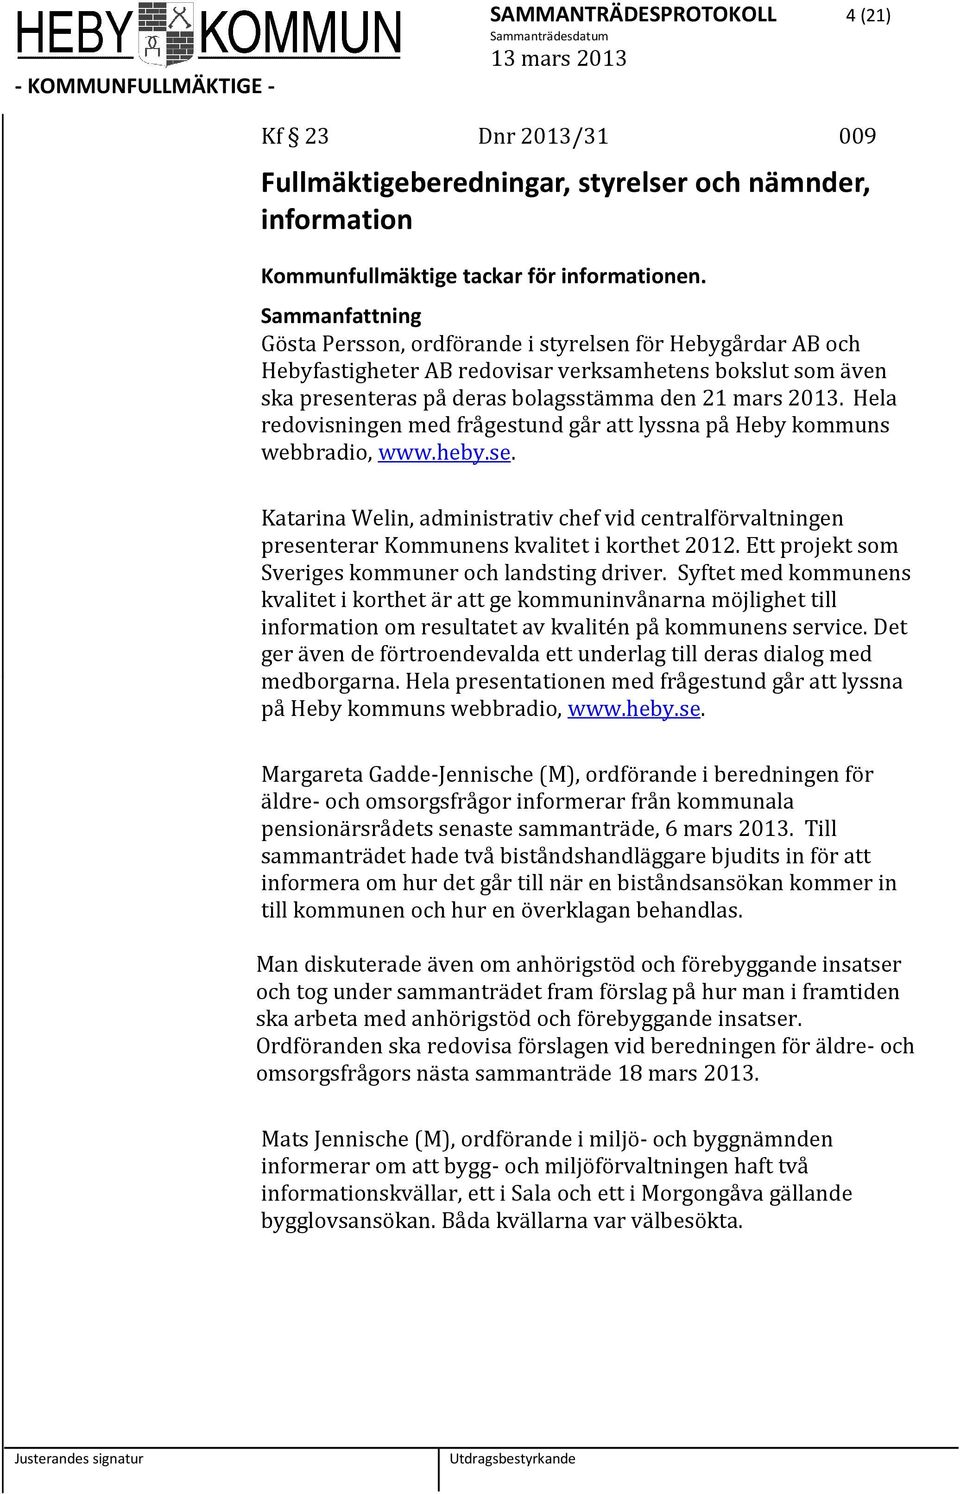 Hela redovisningen med frågestund går att lyssna på Heby kommuns webbradio, www.heby.se. Katarina Welin, administrativ chef vid centralförvaltningen presenterar Kommunens kvalitet i korthet 2012.